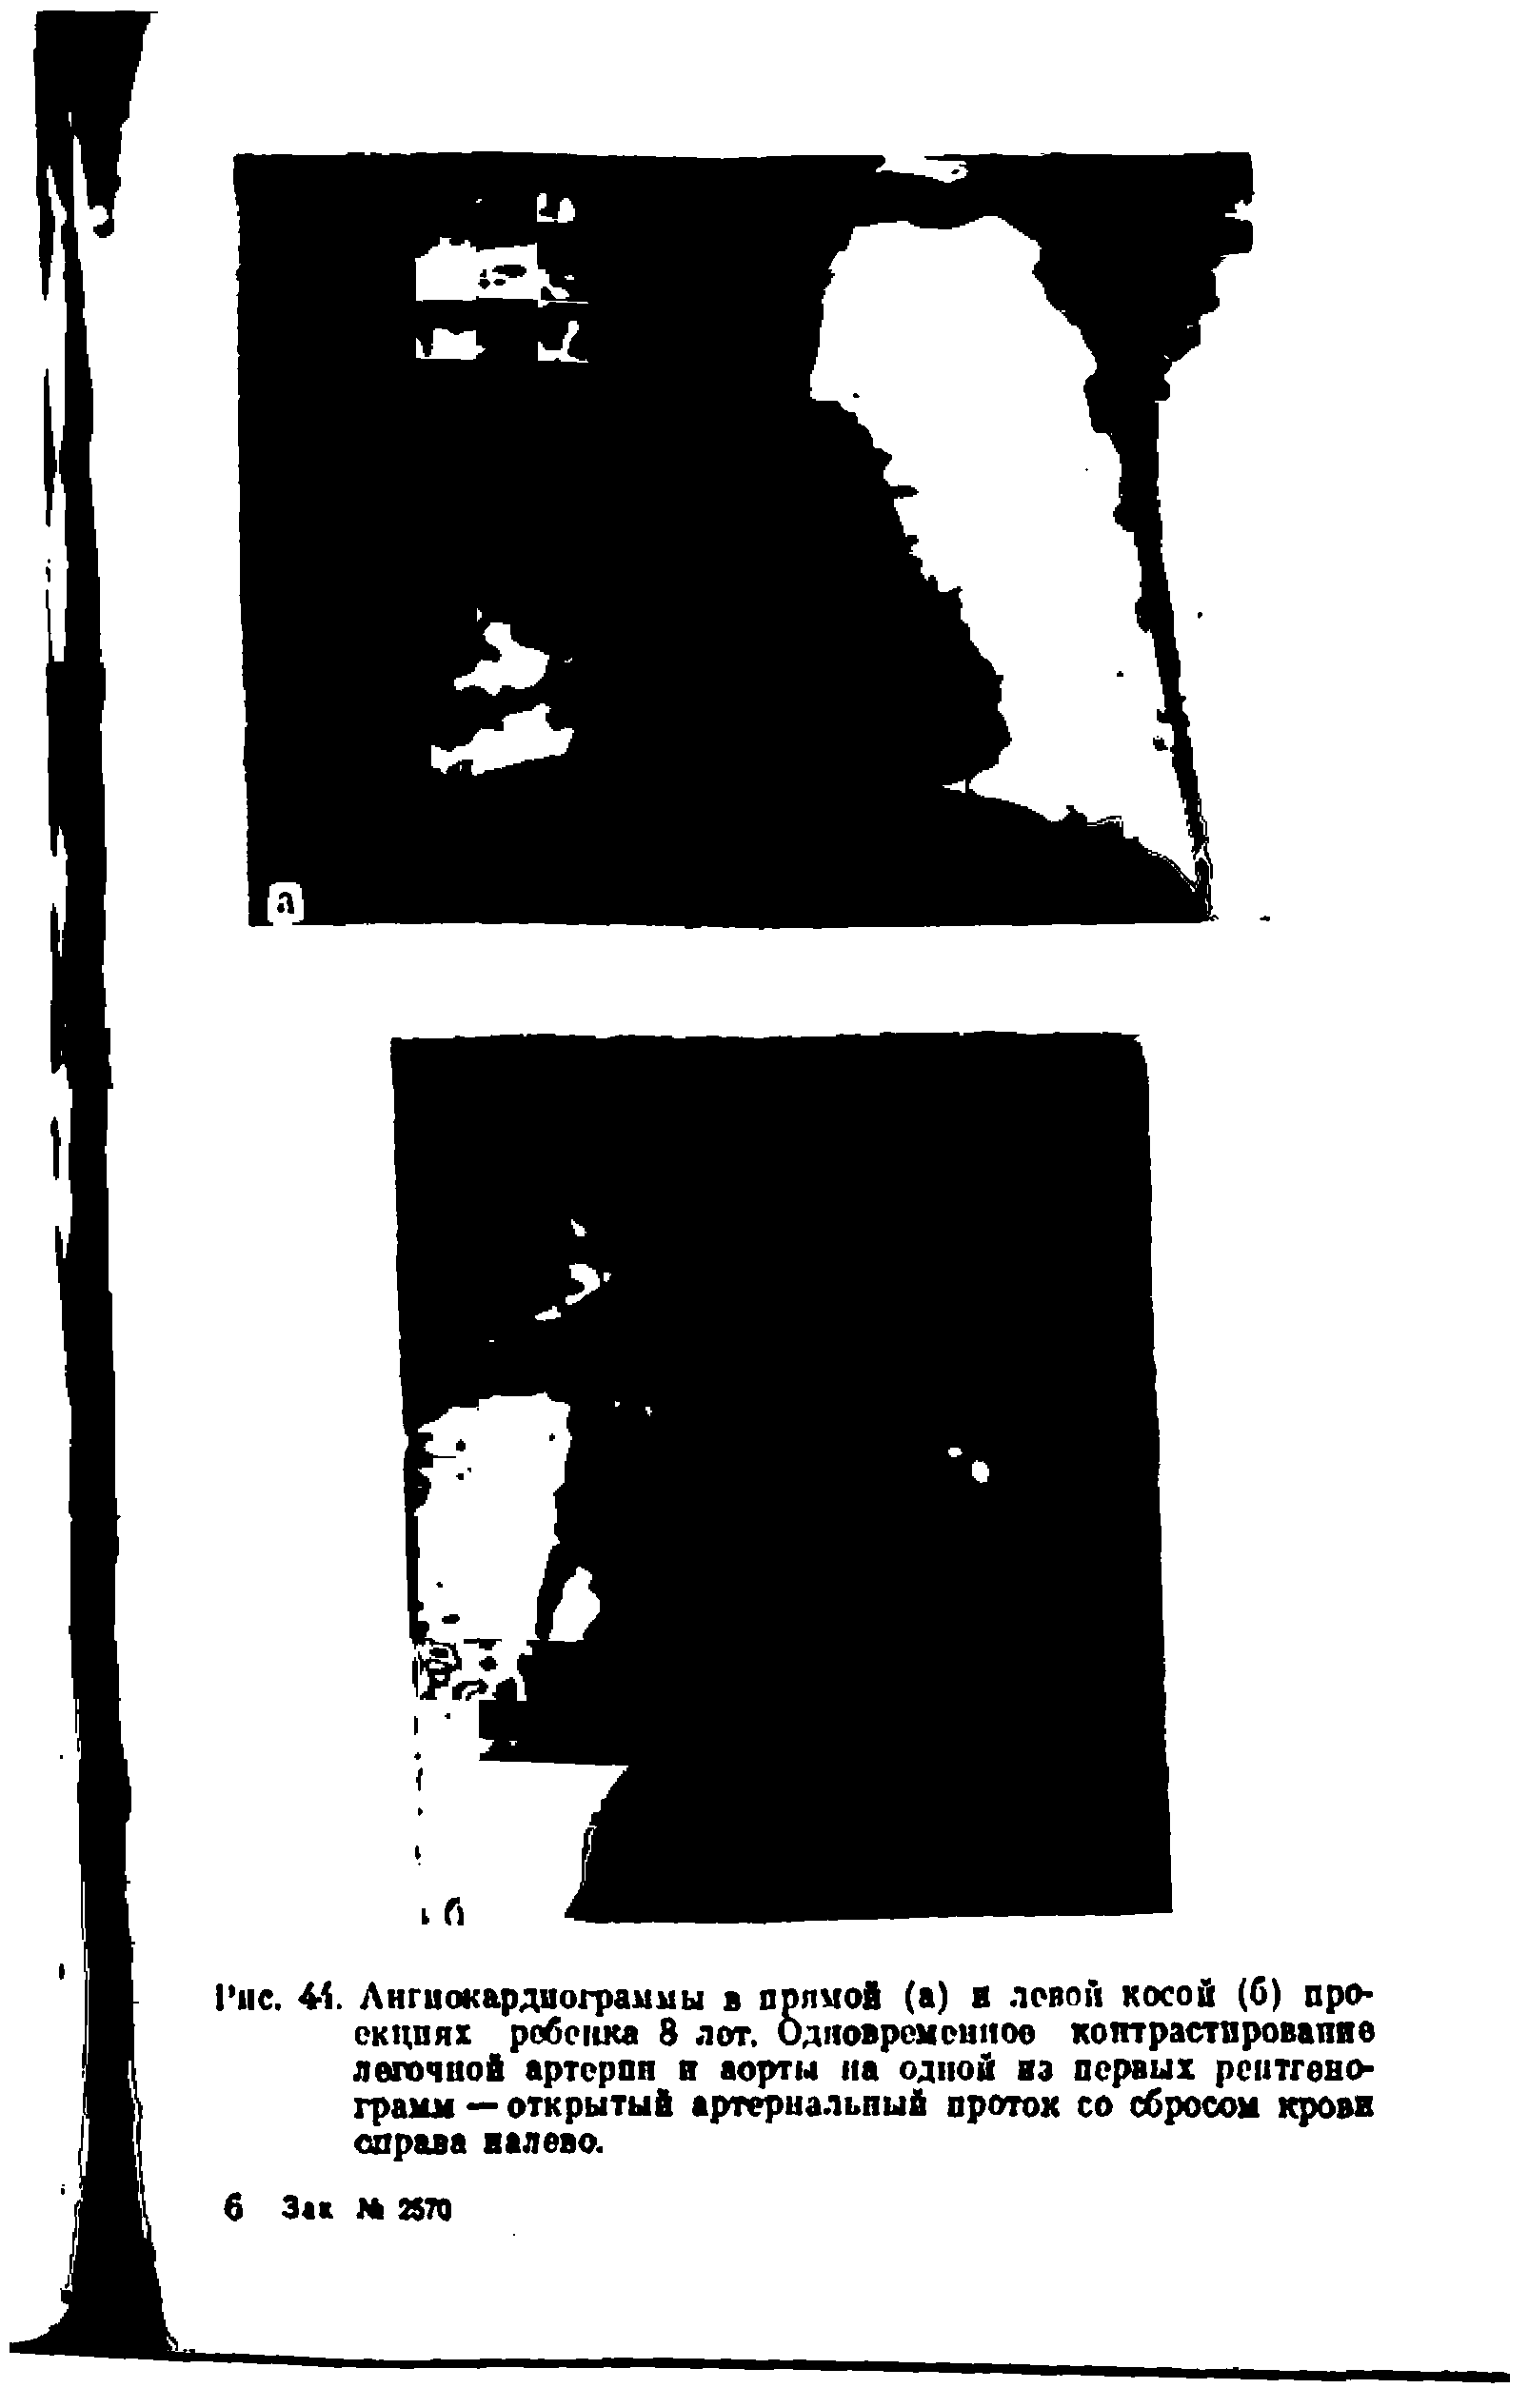 Рис. 41. Ангиокардиограммы в прямой (а) и повой косой (б) проекциях ребенка 8 лот. Одновременное коптрастпровапие легочной артерпн и аорты на одной на первых рентгенограмм — открытый артериальный проток со сбросом крови справа налево.